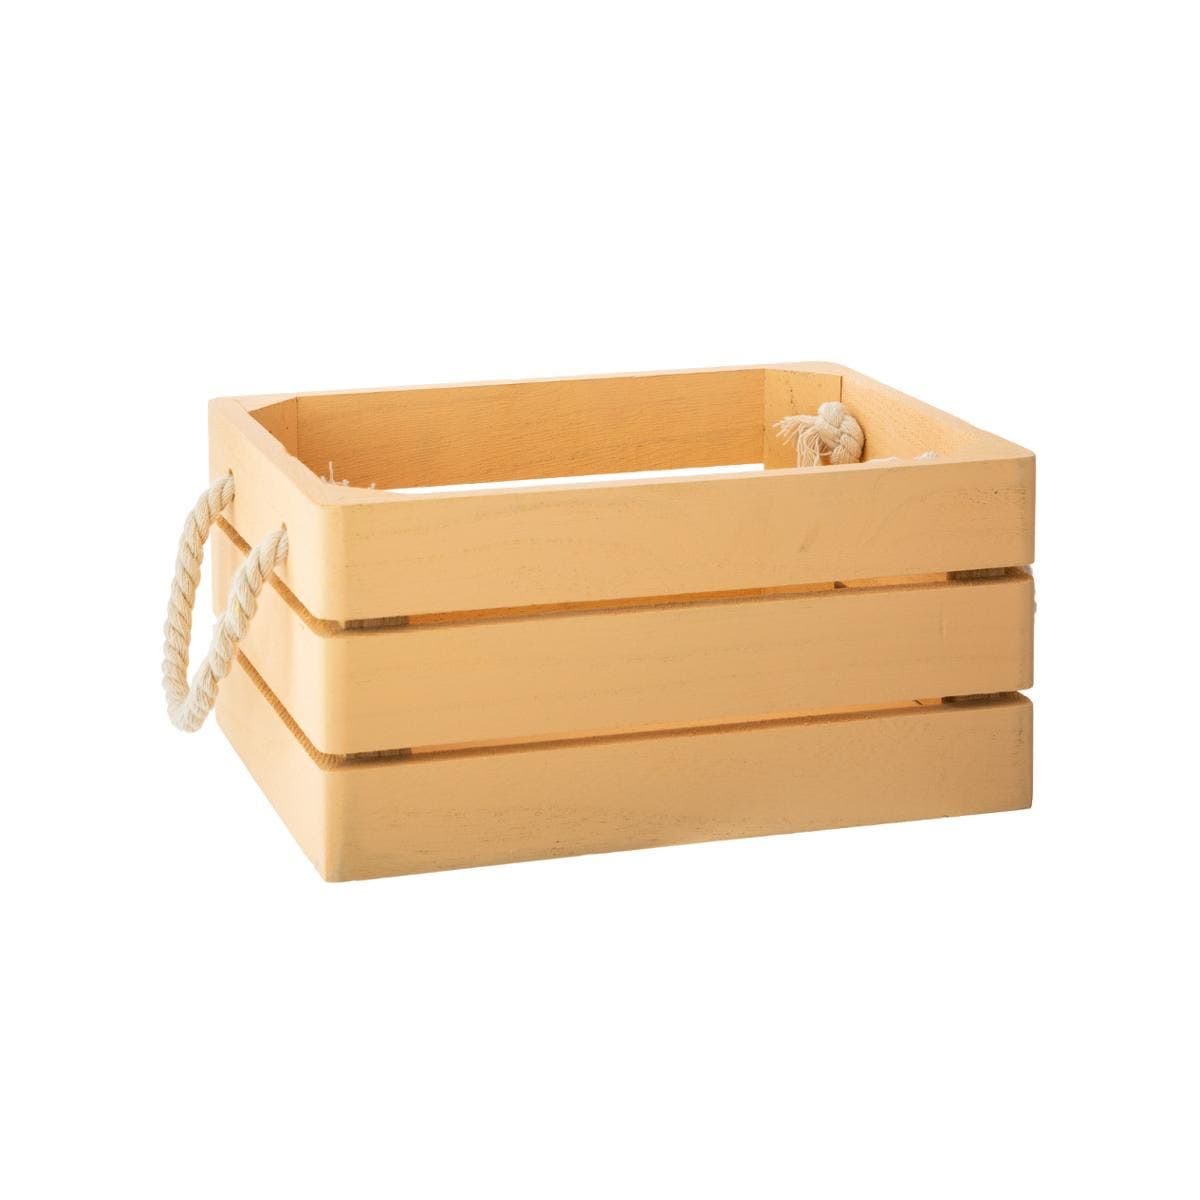 Caja de madera maciza y color amarillo - Oma Home